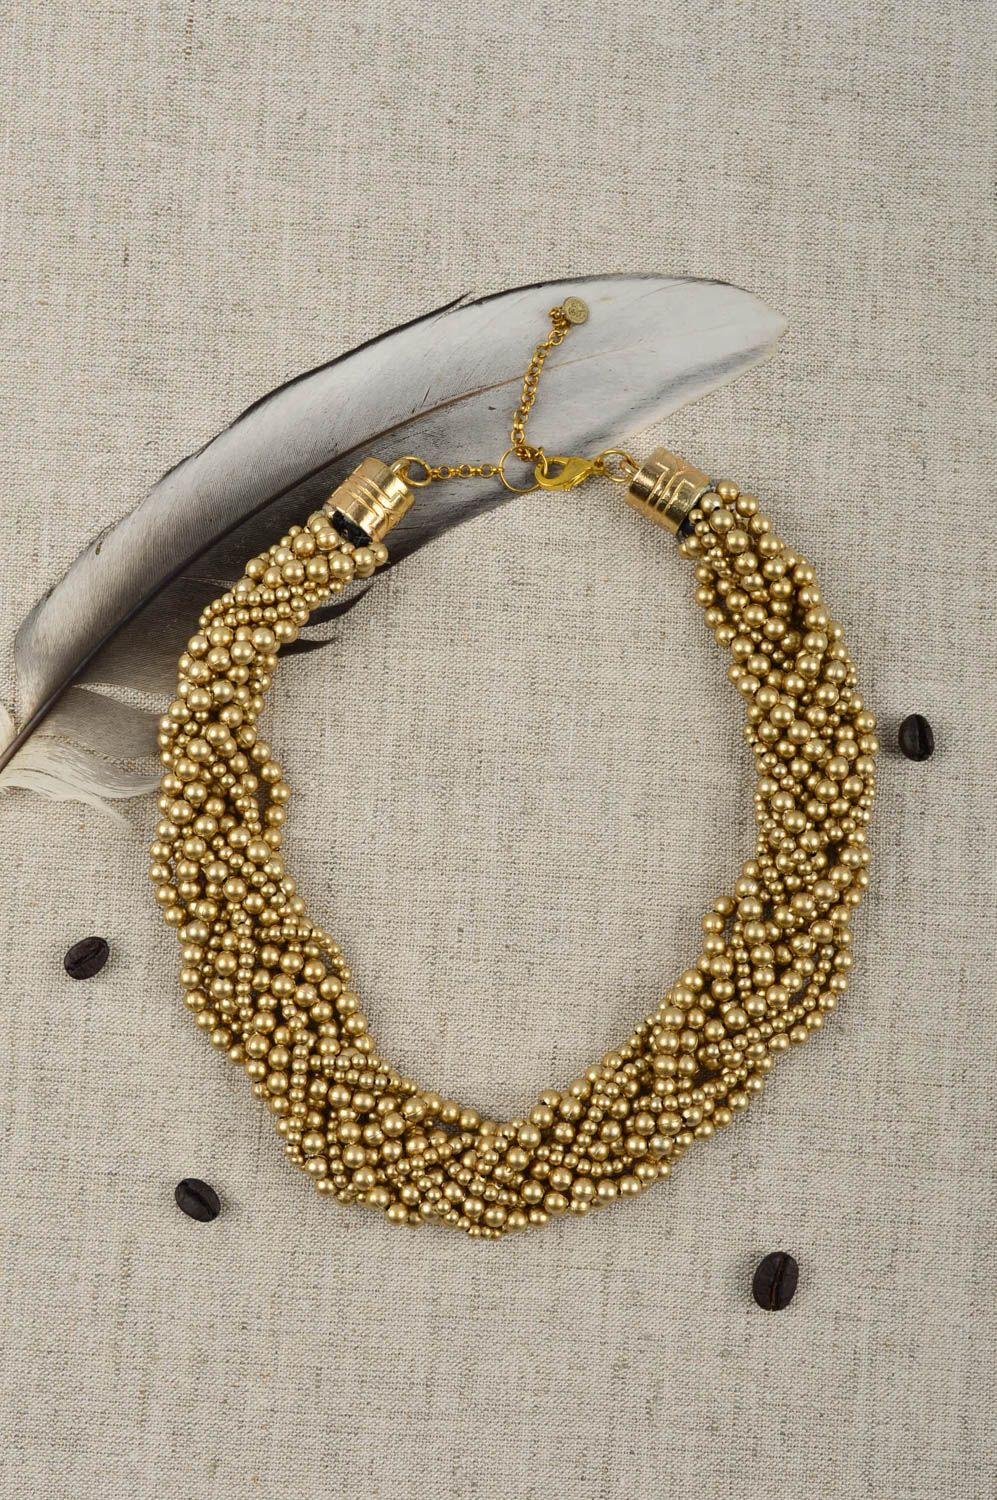 Ожерелье из бисера украшение ручной работы колье из бусин золотистого оттенка фото 1